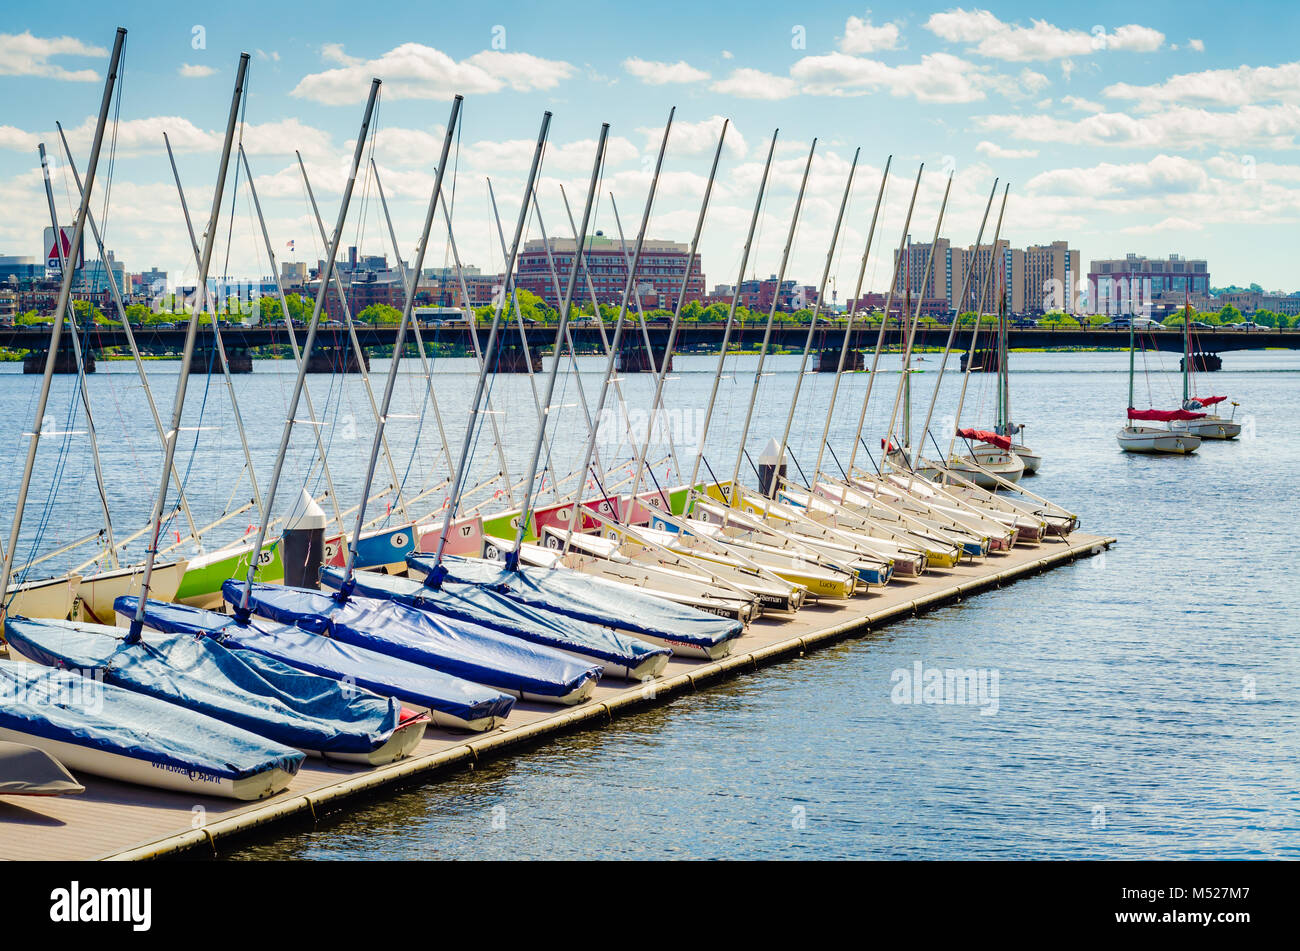 Desde 1935, el MIT ha sido el pabellón de vela, donde miles de personas en la zona de Boston han aprendido y perfeccionado de vela y las carreras en el río Charles. Foto de stock